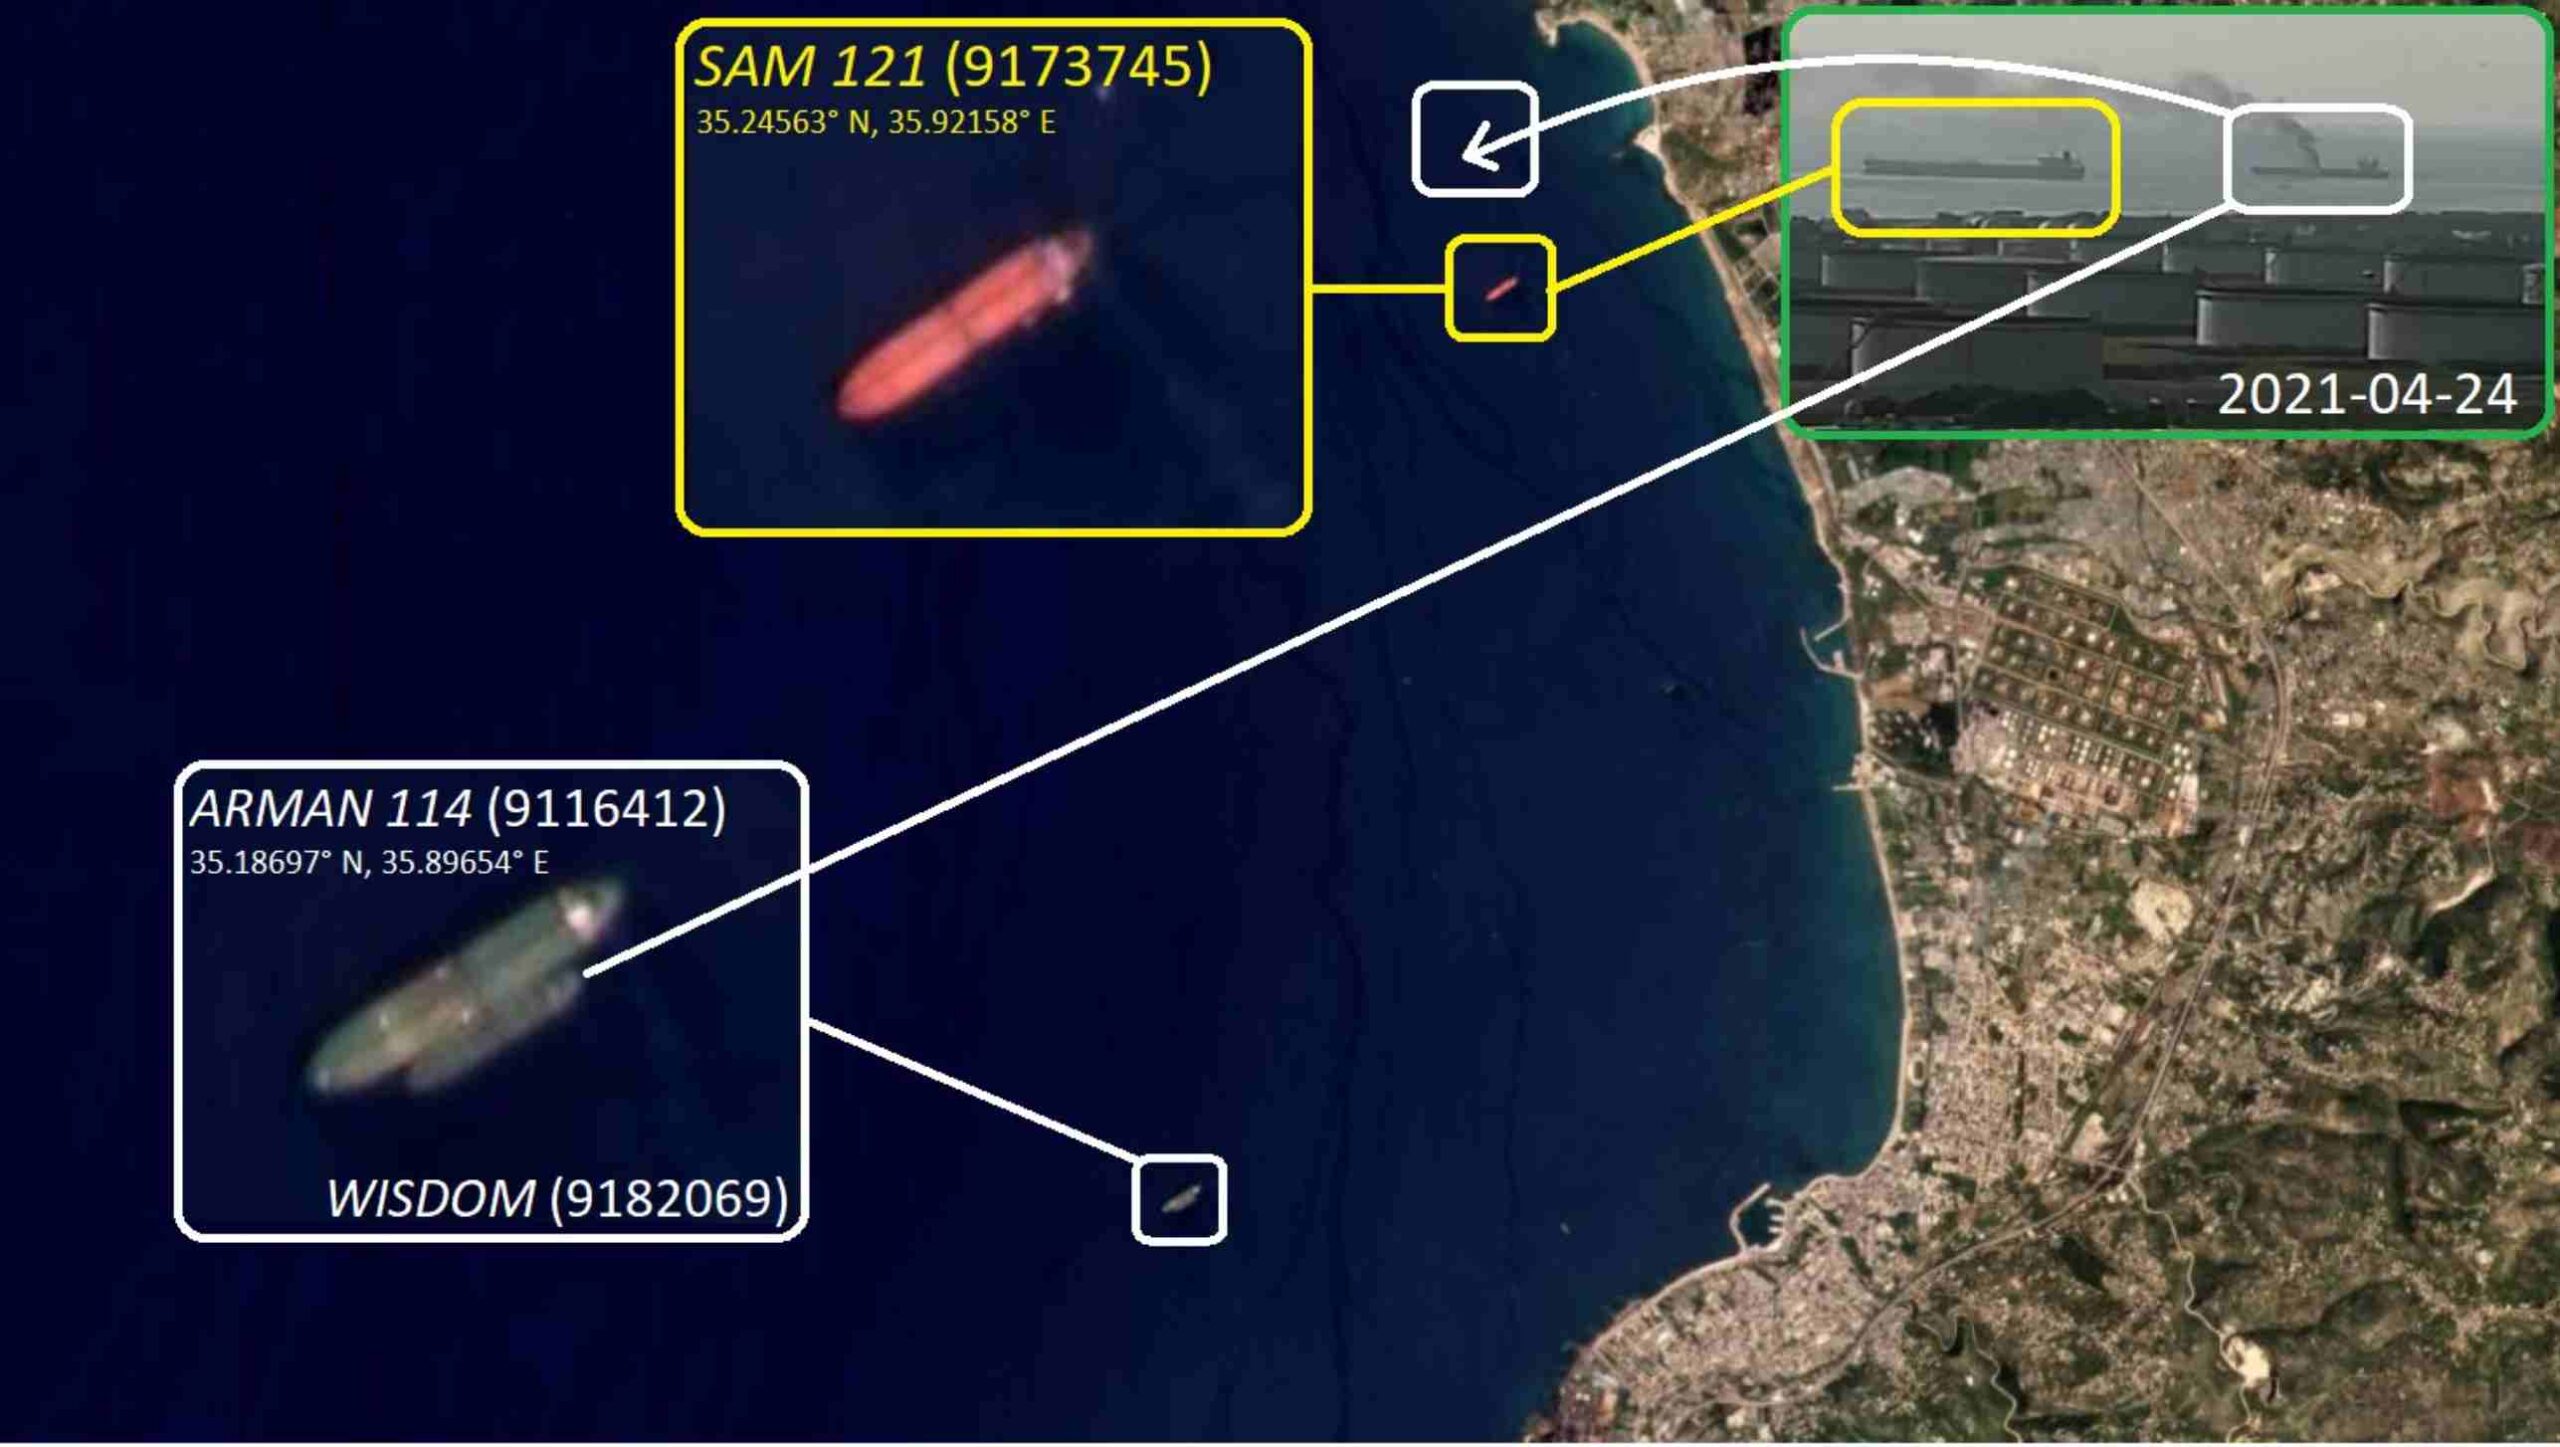 SIRIA - Nessun attacco di droni sulla petroliera che scaricava petrolio a Baniyas 1